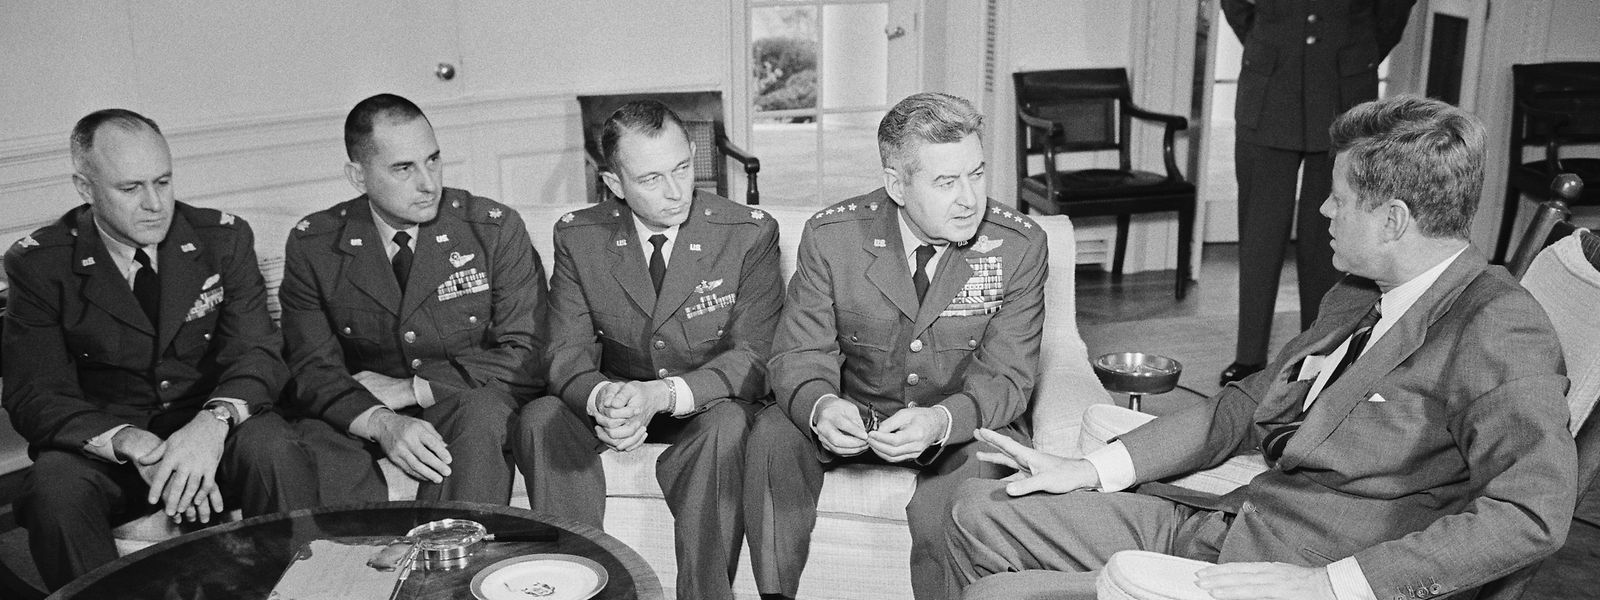 Präsident John F. Kennedy (rechts) empfing im Weißen Haus die beiden Air Force-Piloten, die Aufklärungsflüge über Kuba durchgeführt hatten, sowie die für die Auswertung ihrer Berichte und Fotos zuständigen Pentagon-Beamten. Von links nach rechts: Oberst Ralph D. Steakly, der Auswerter; Oberstleutnant Joe M. O'Grady, Major Richard S. Heyser und General Curtis Lemay.